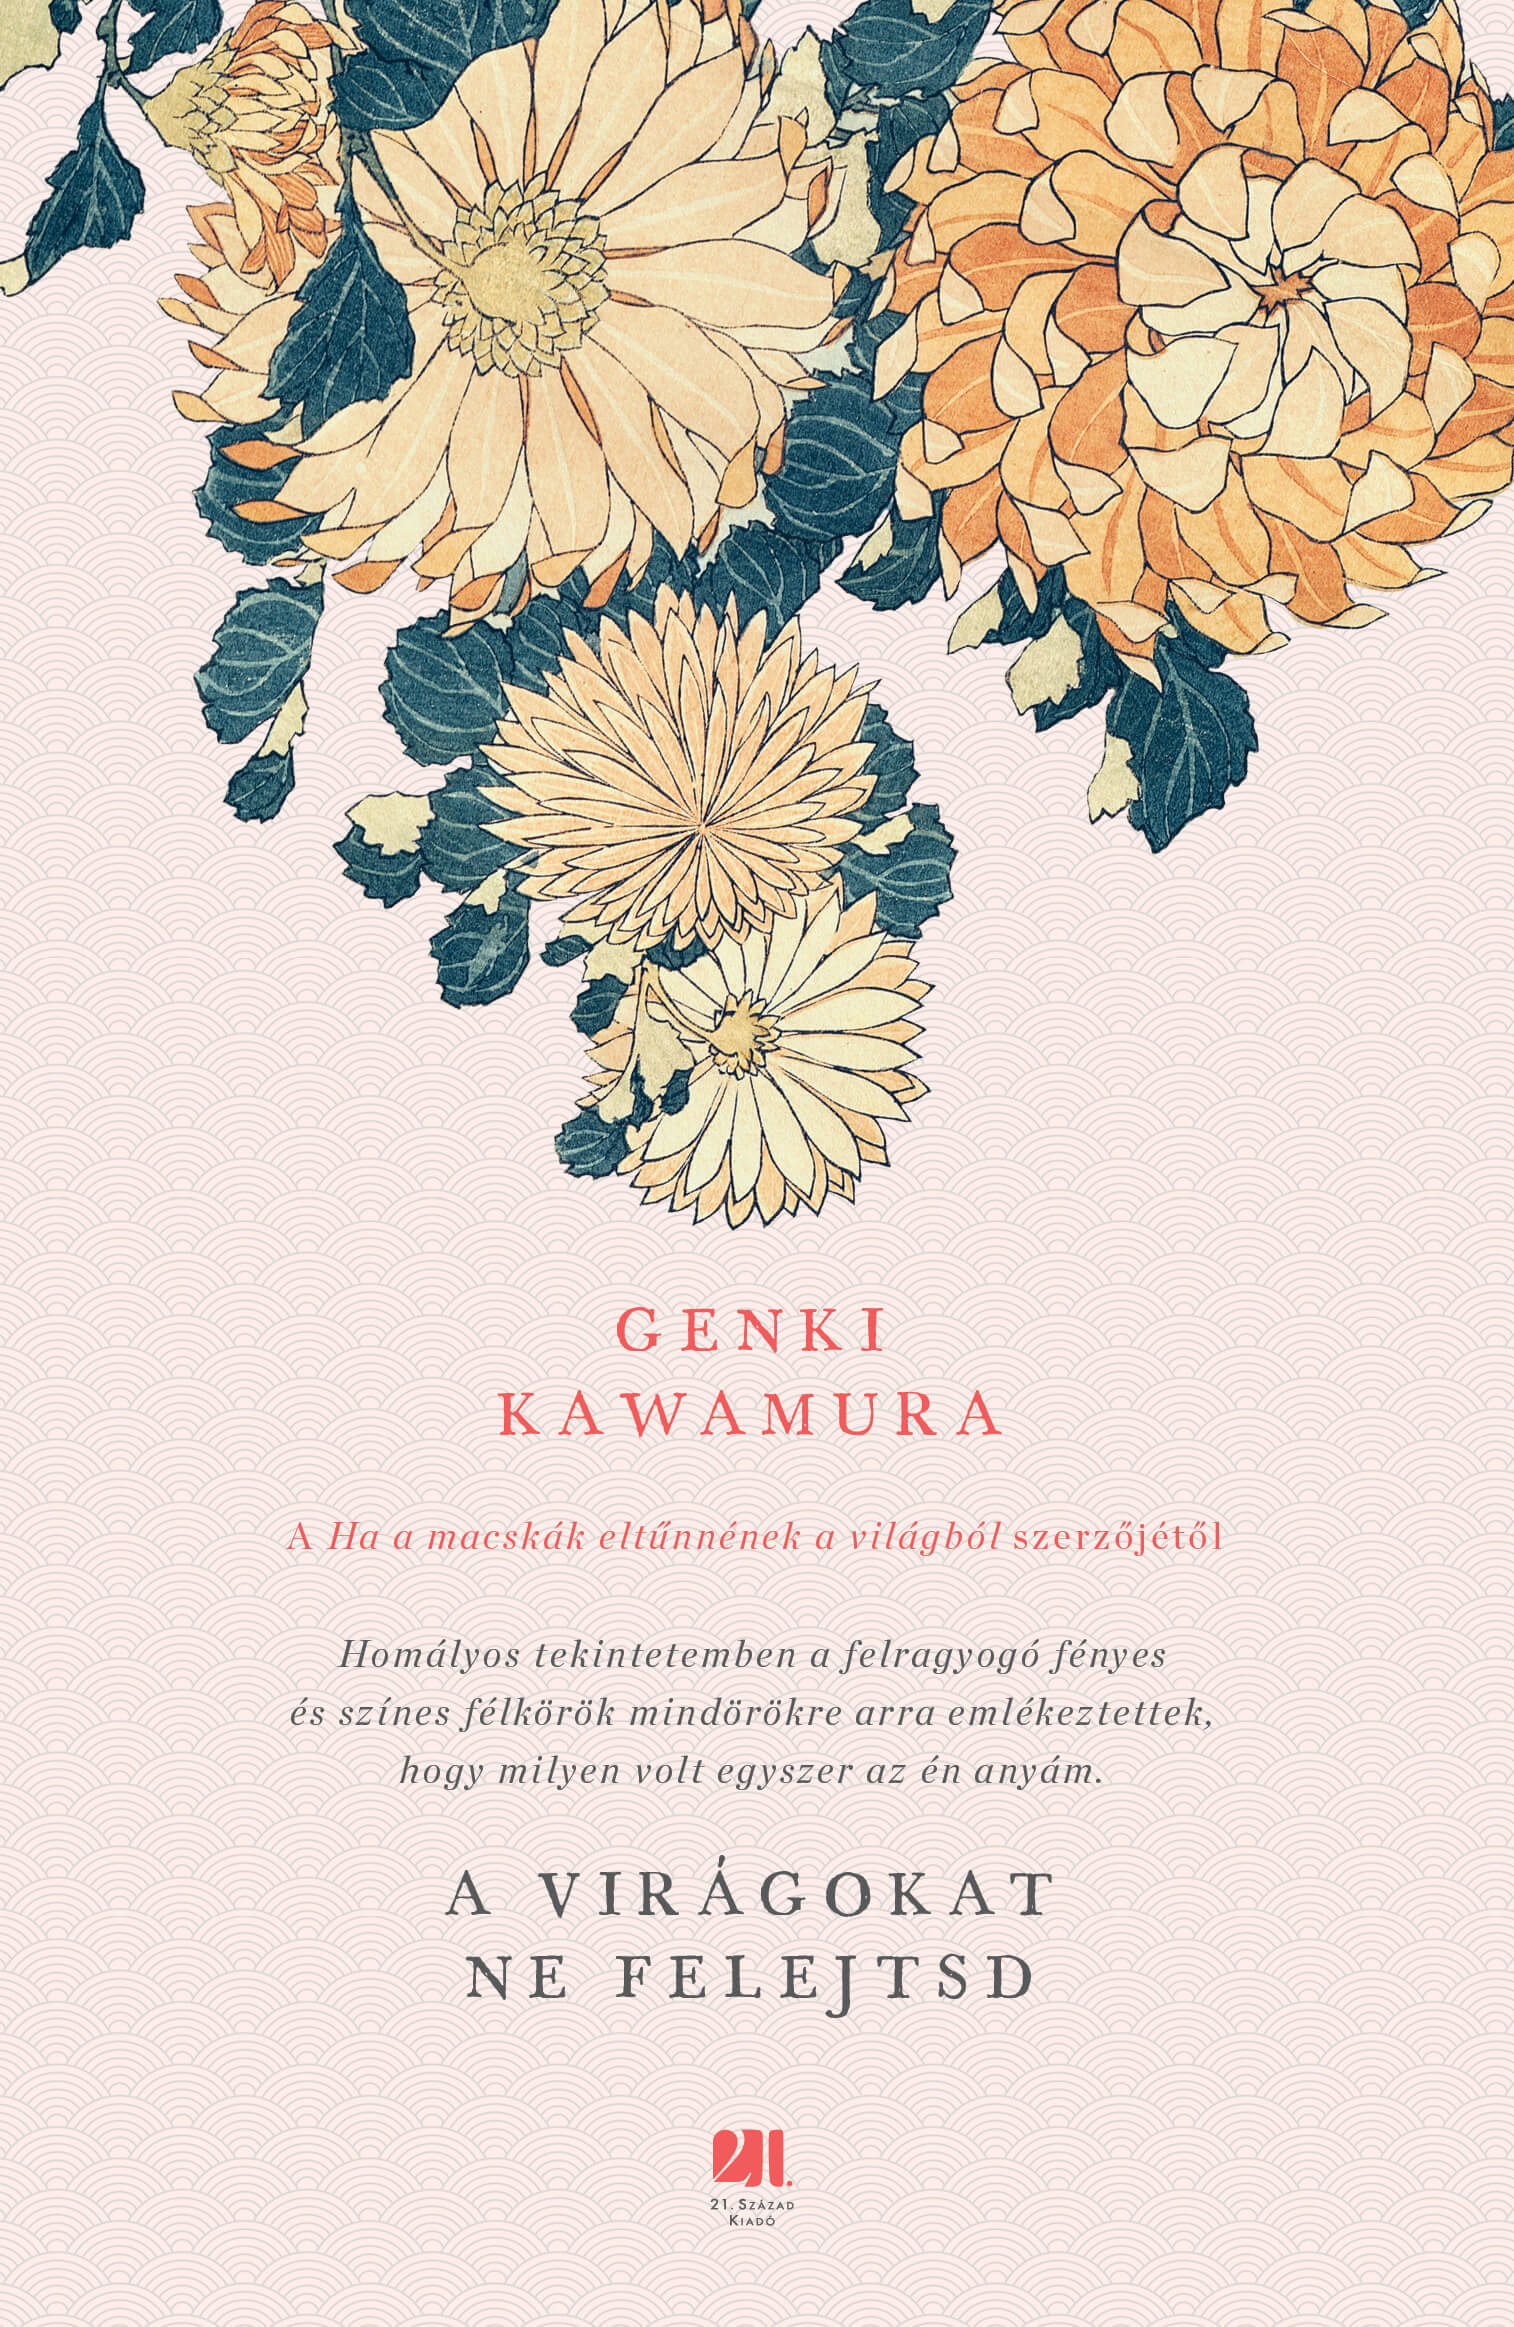 Genki Kawamura - A virágokat ne felejtsd